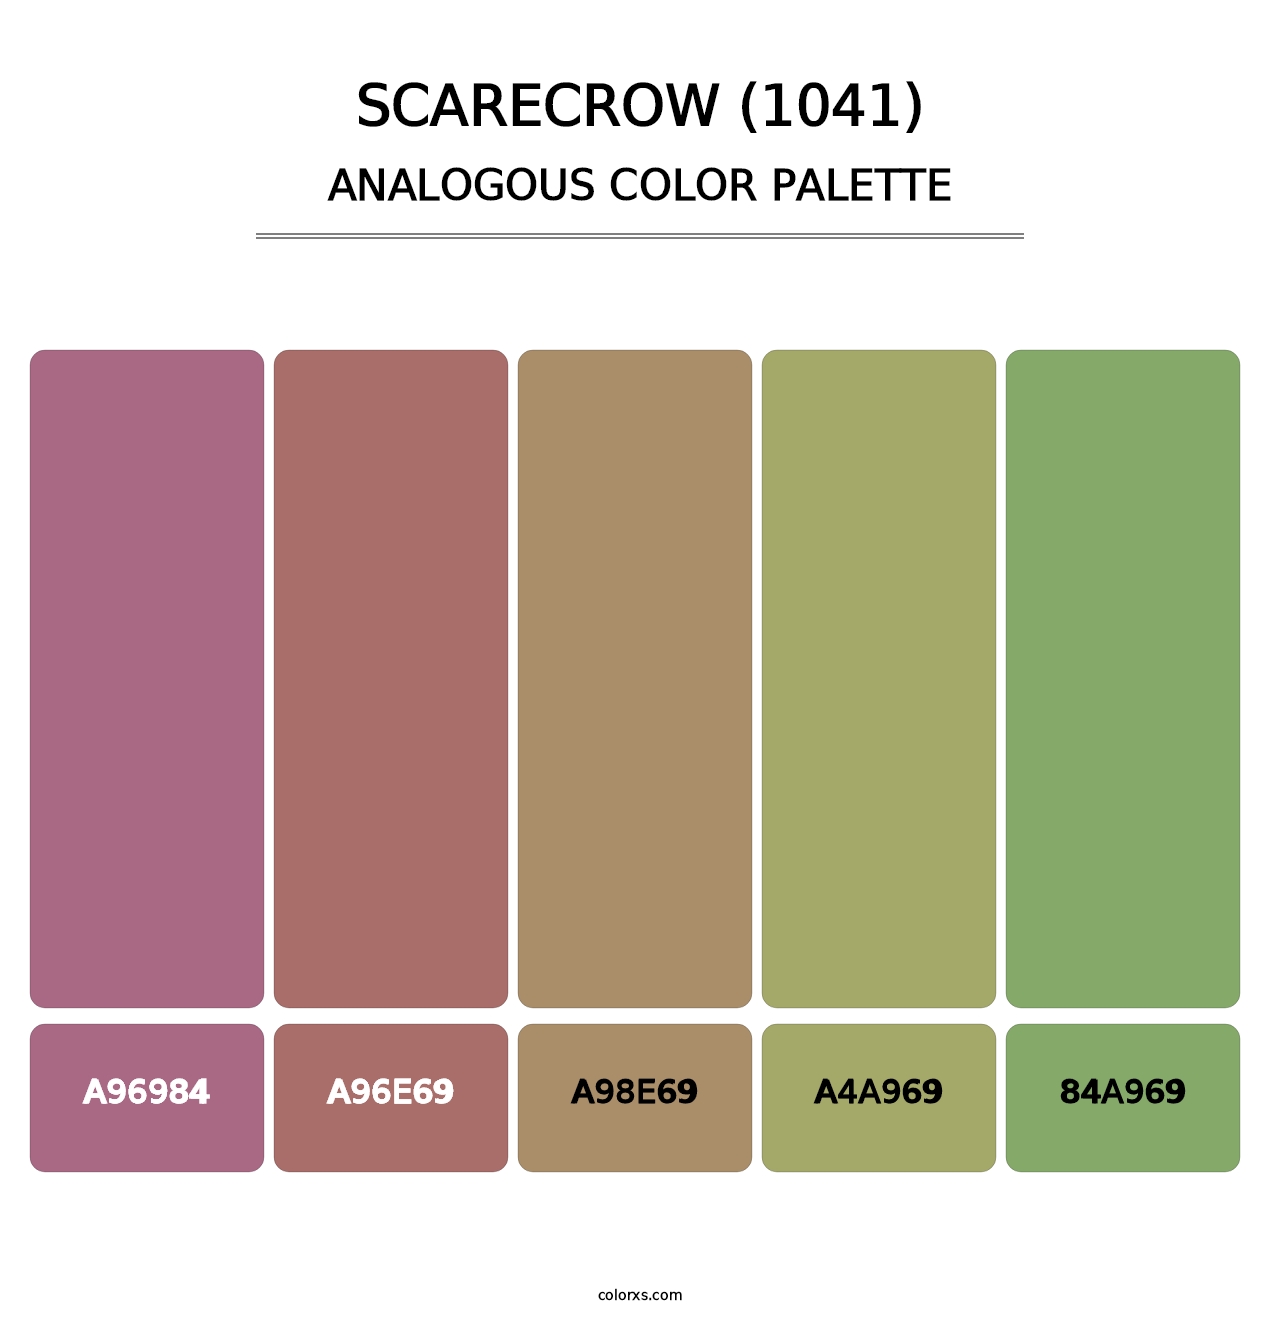 Scarecrow (1041) - Analogous Color Palette